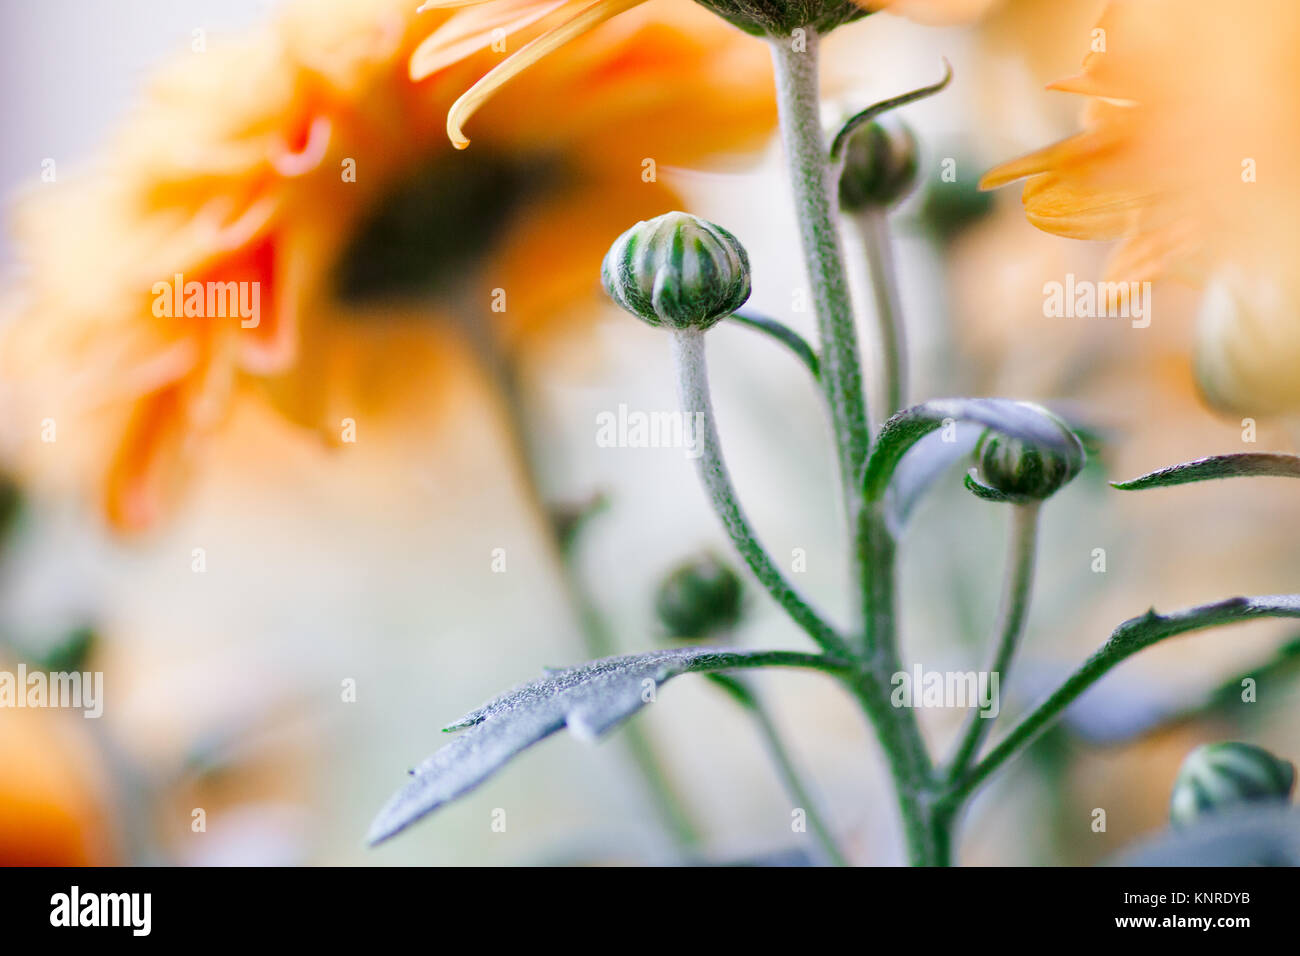 Chrysanthemums closeup Stock Photo